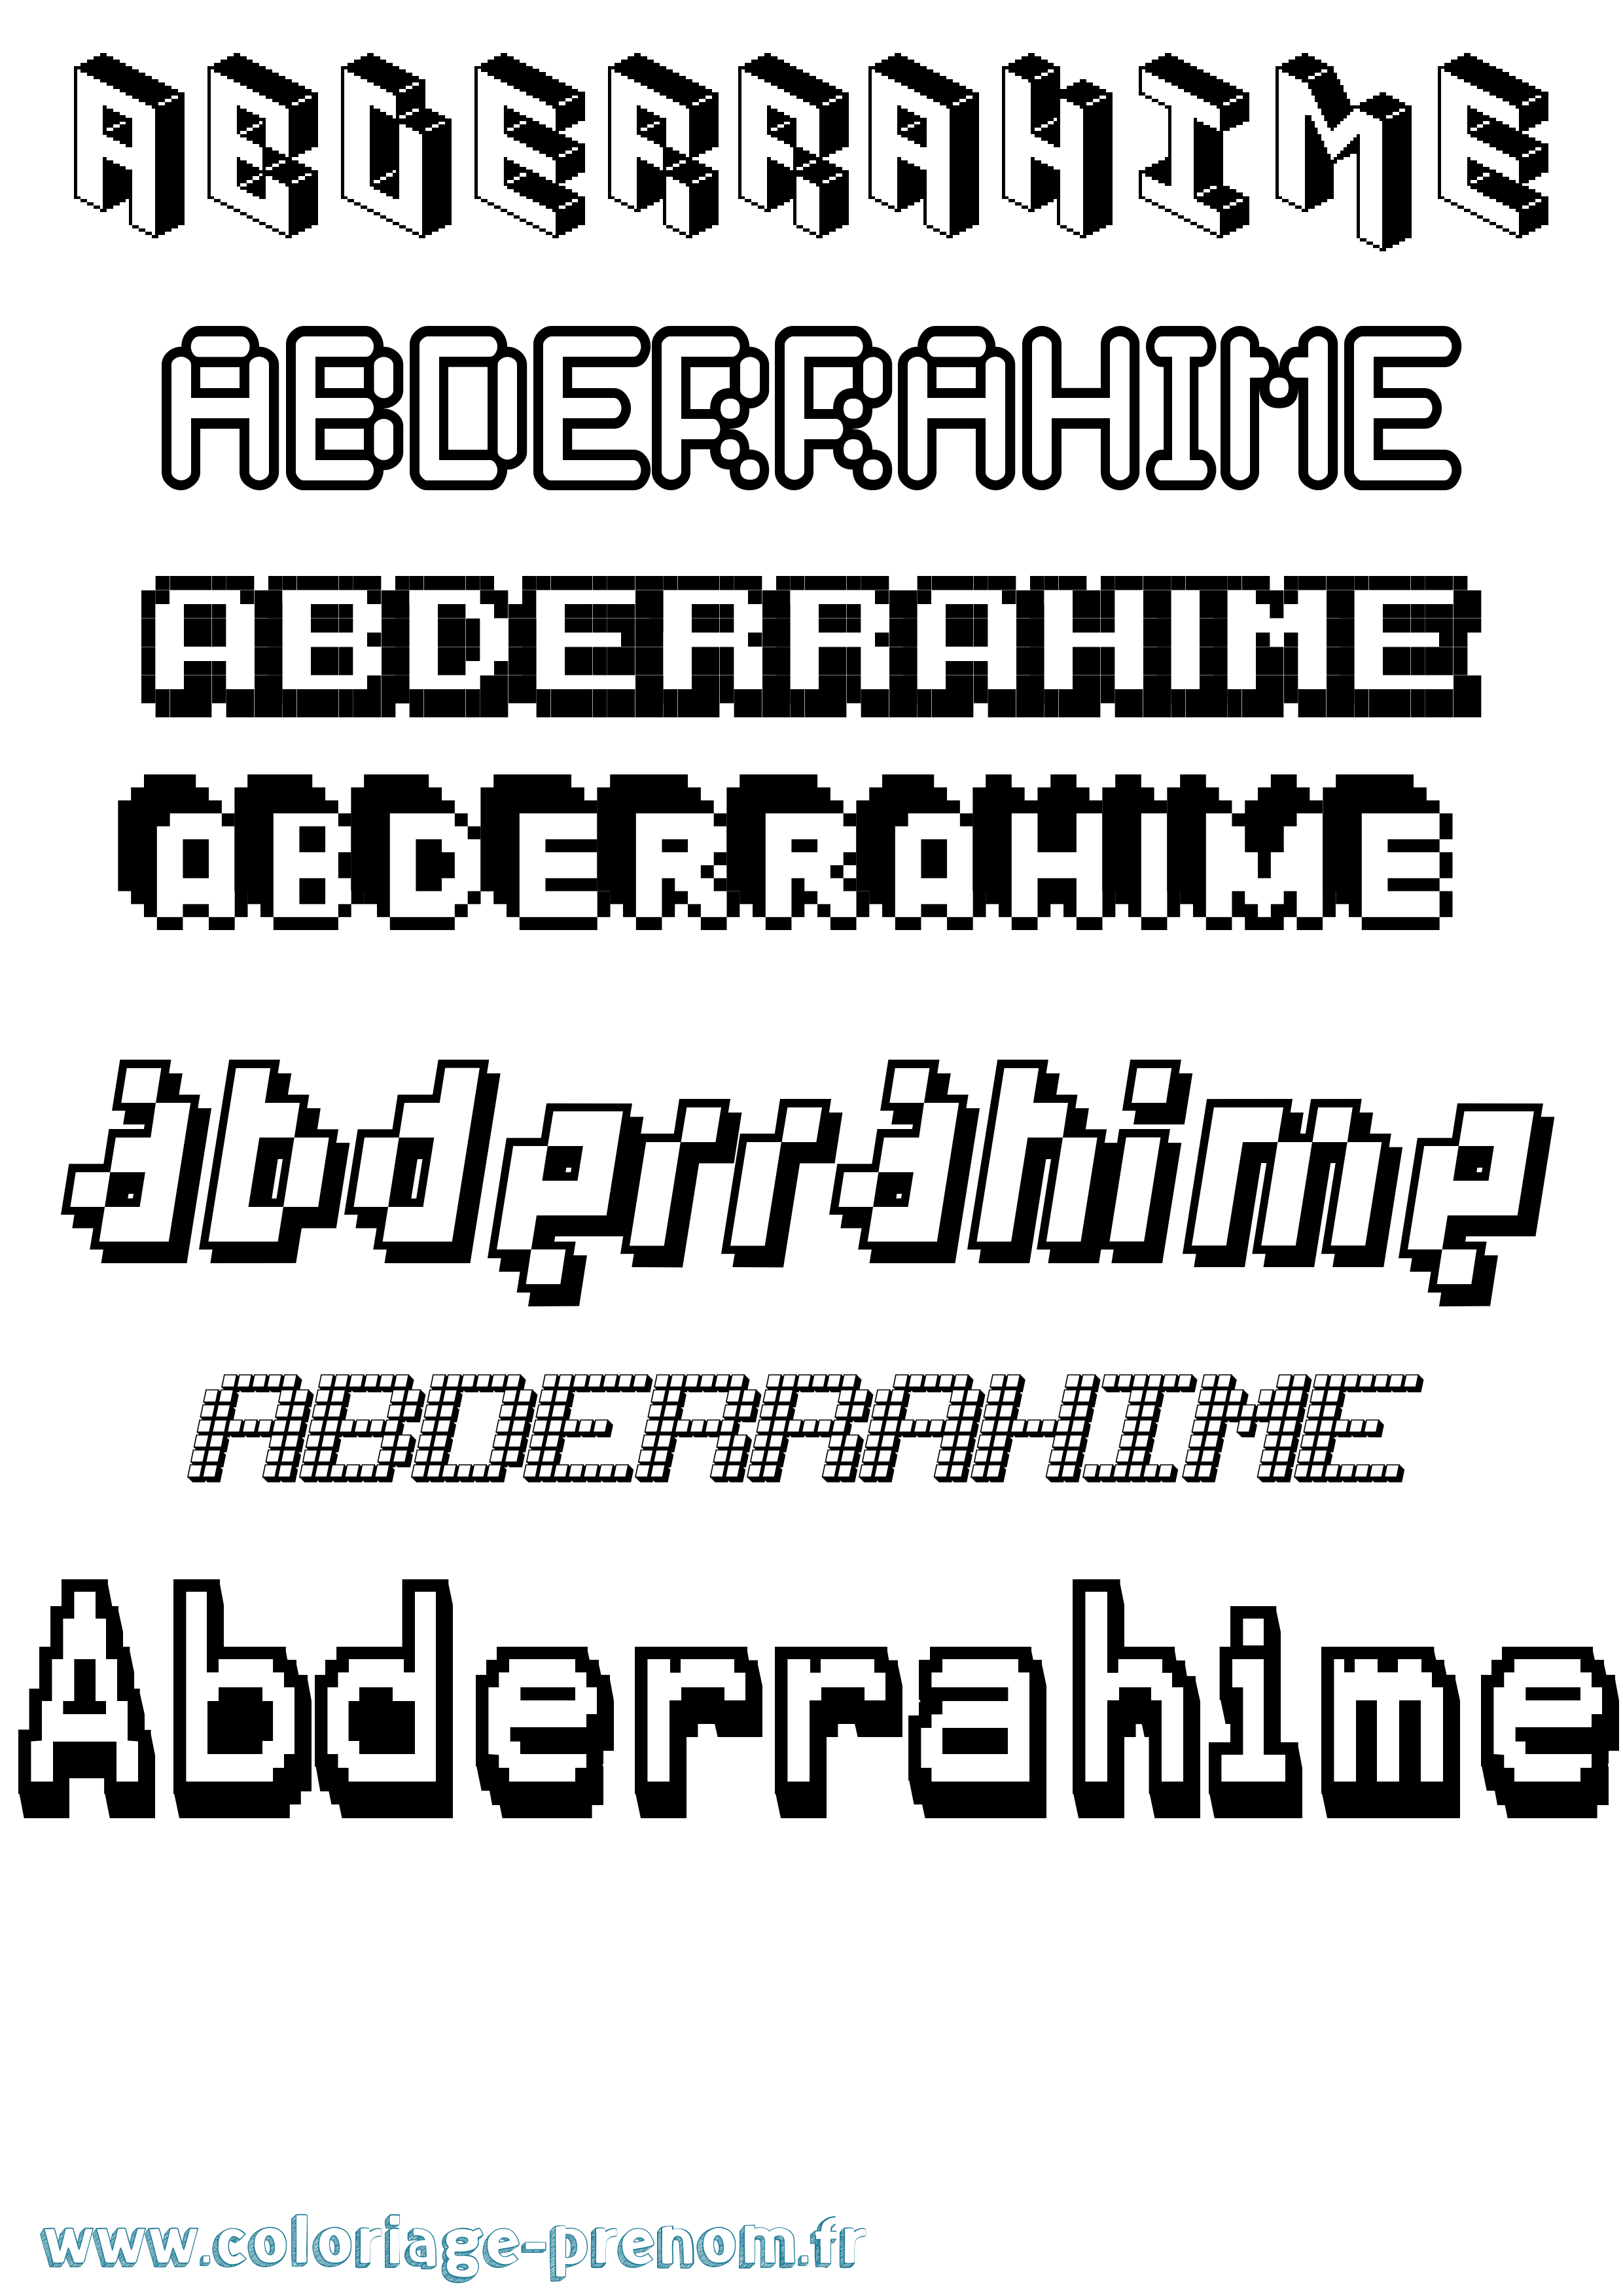 Coloriage prénom Abderrahime Pixel